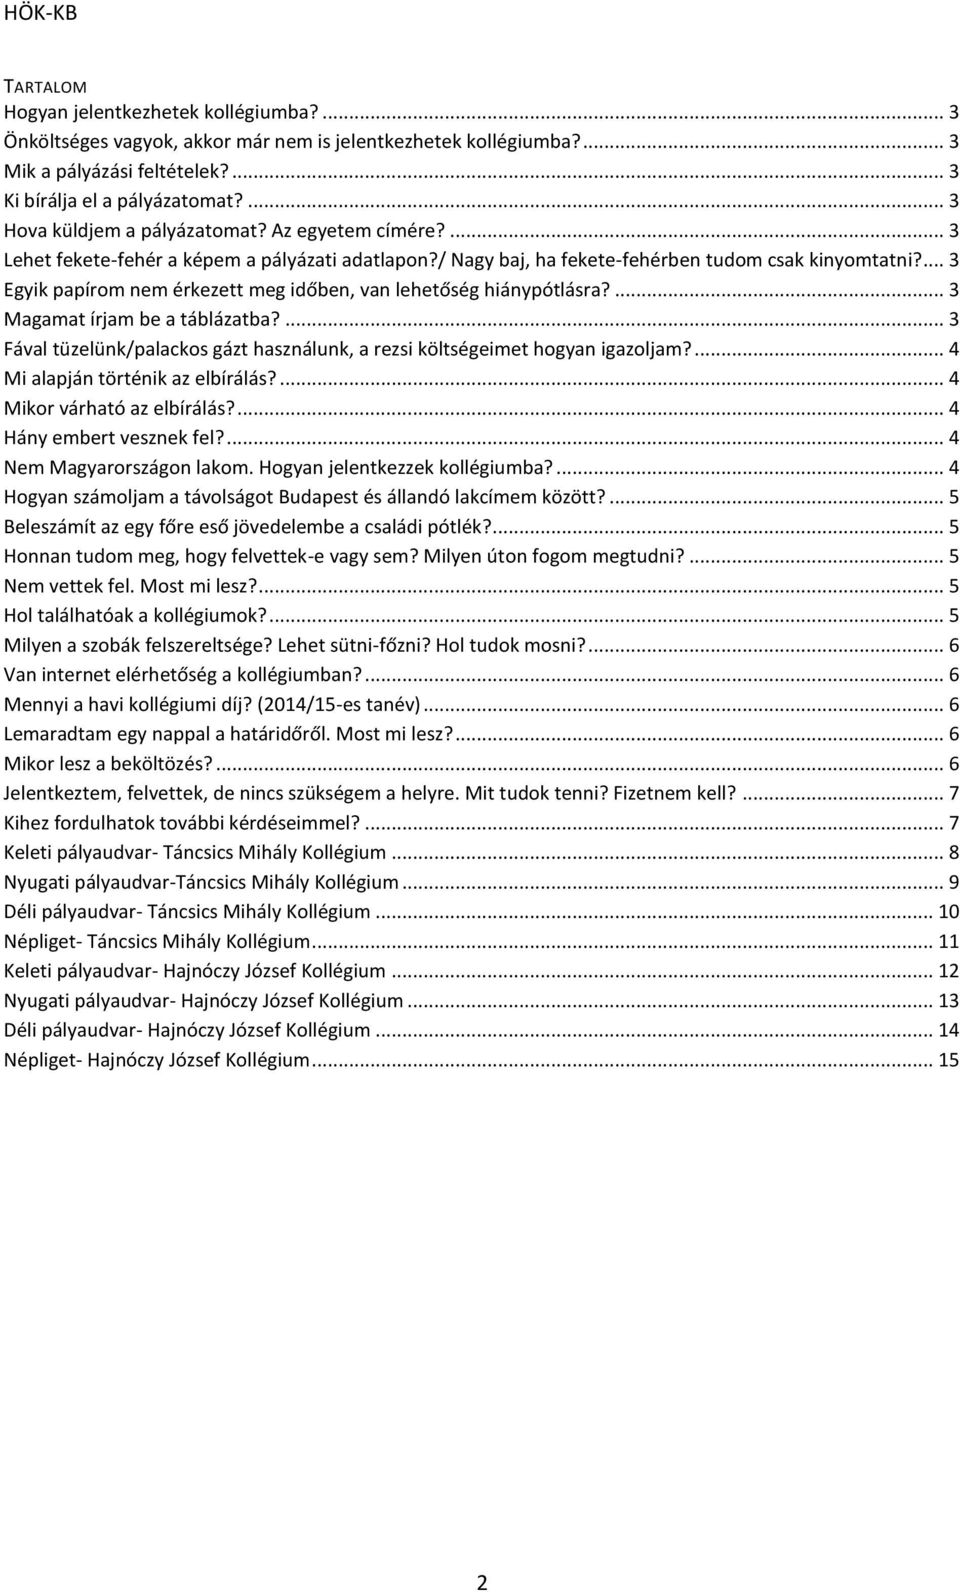 HÖK-KB KOLLÉGIUMI KISOKOS - PDF Free Download